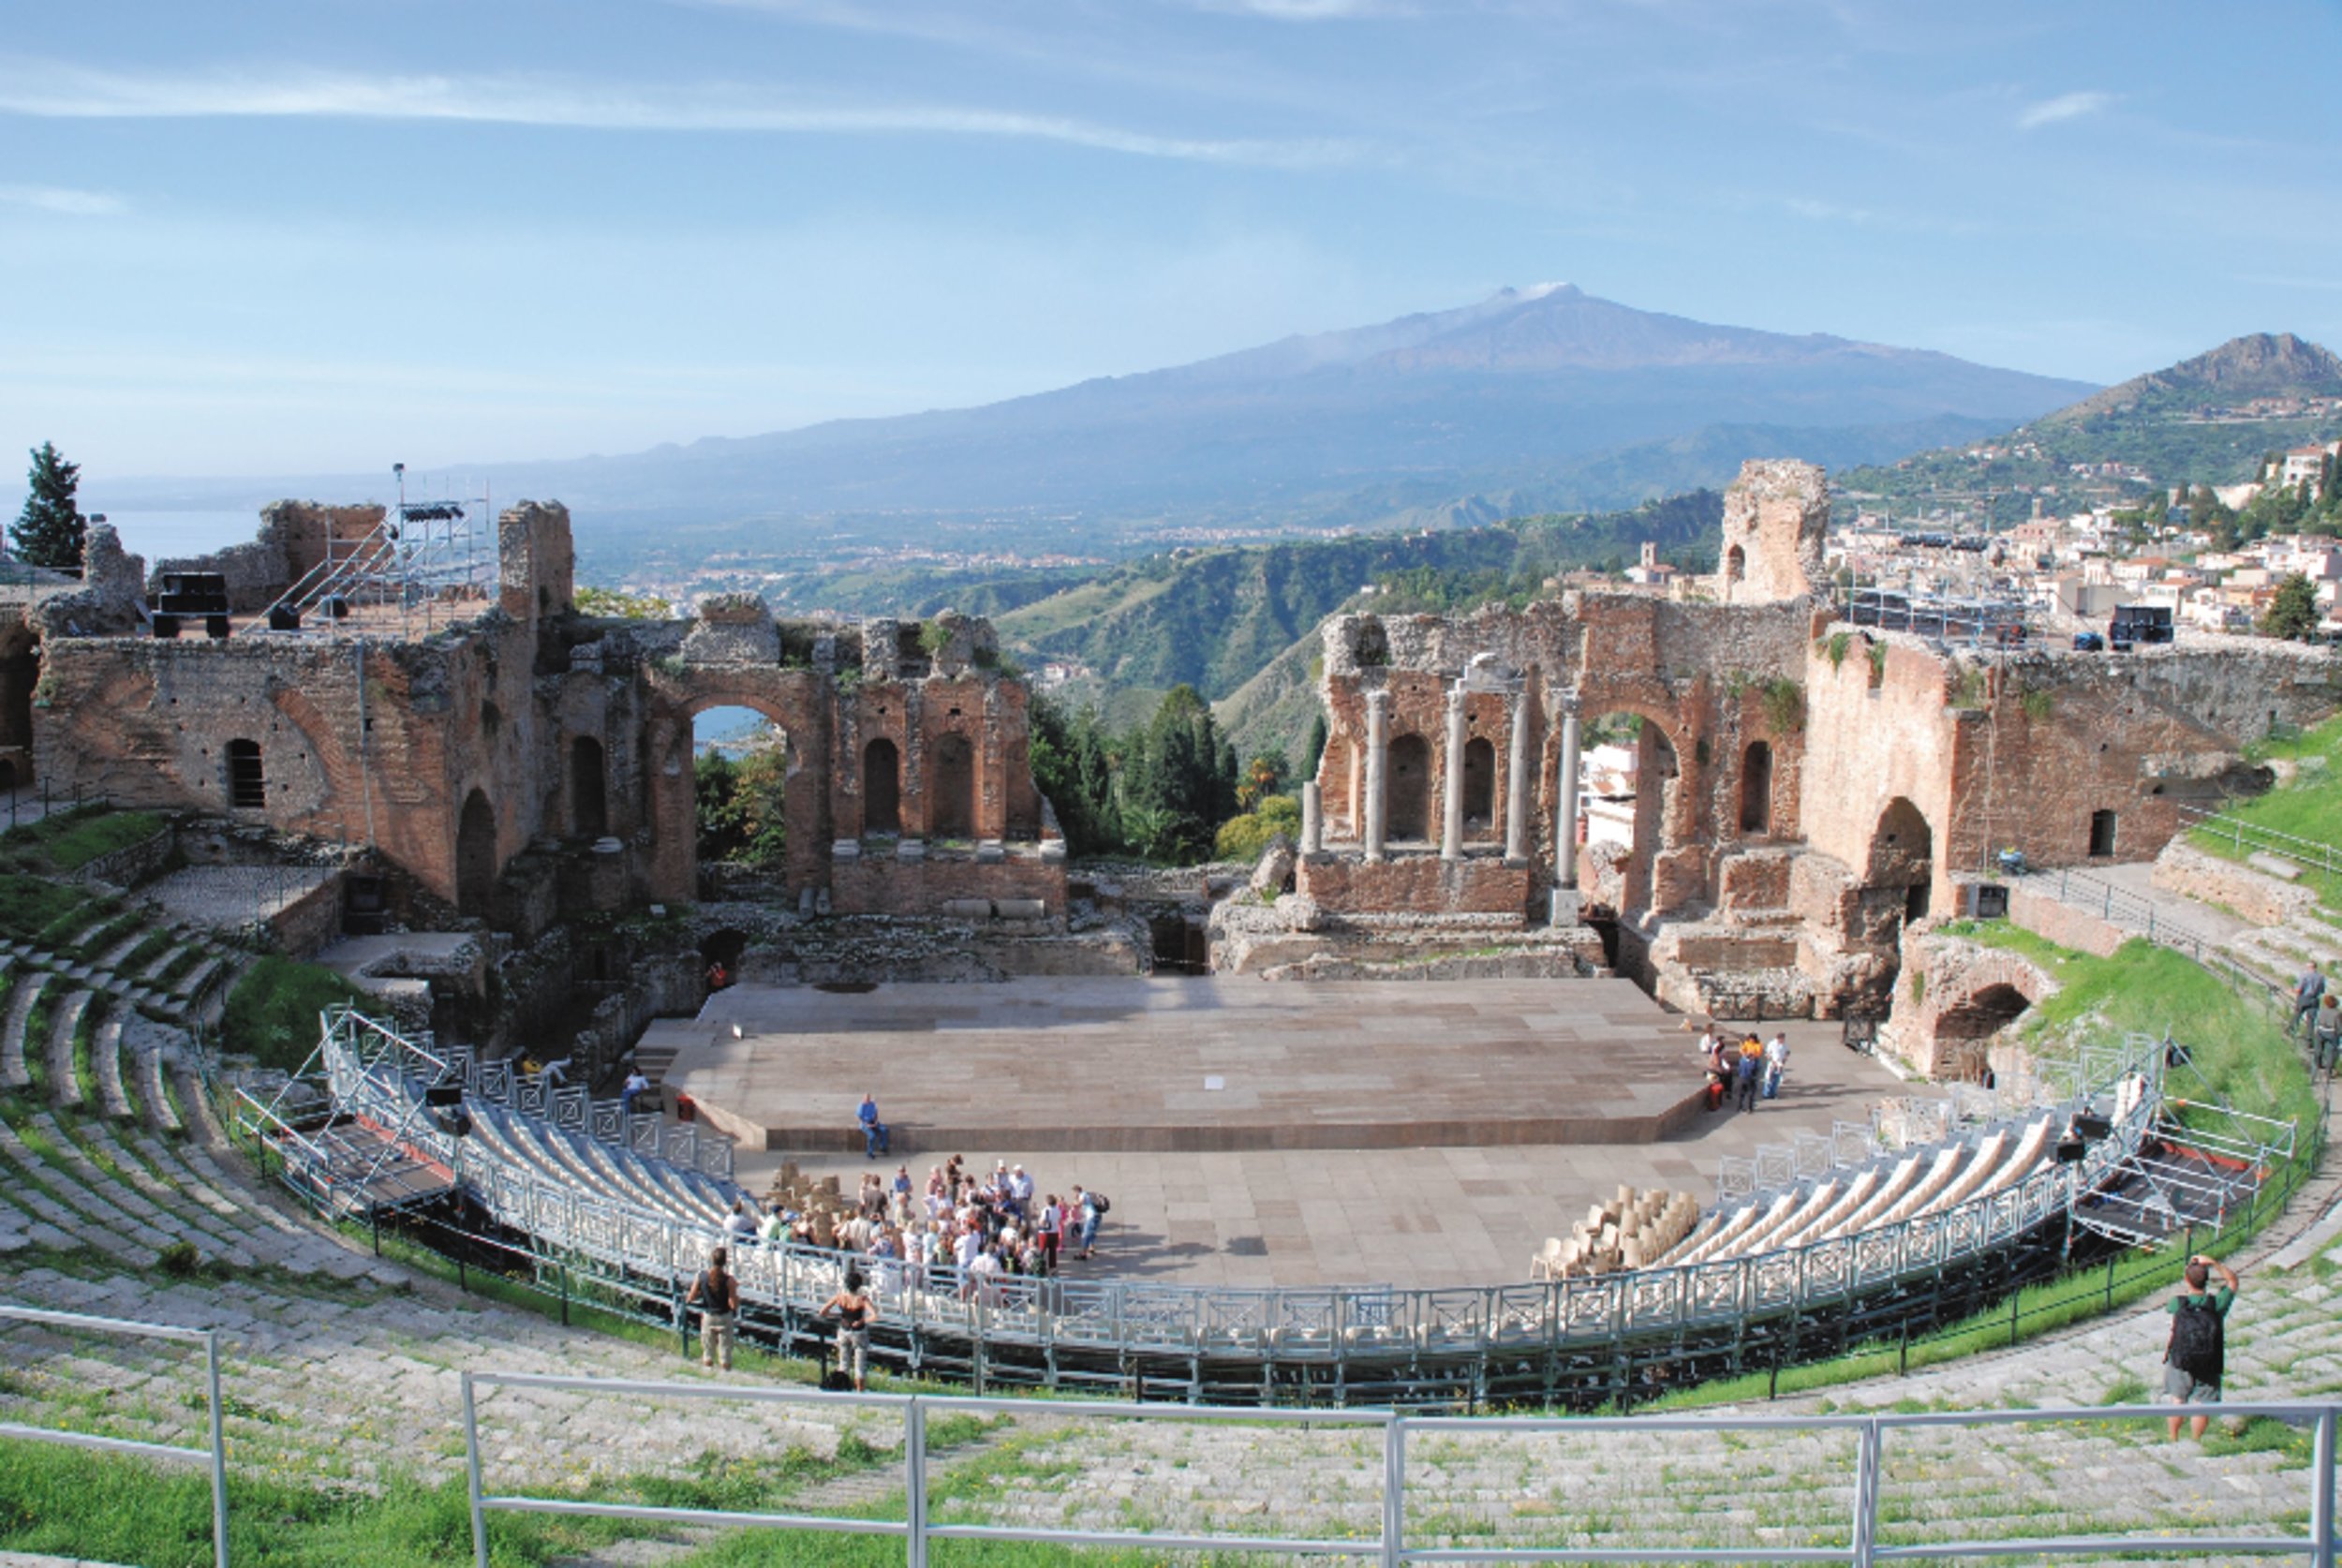 CEL_Messina_Pompeii_1.JPG